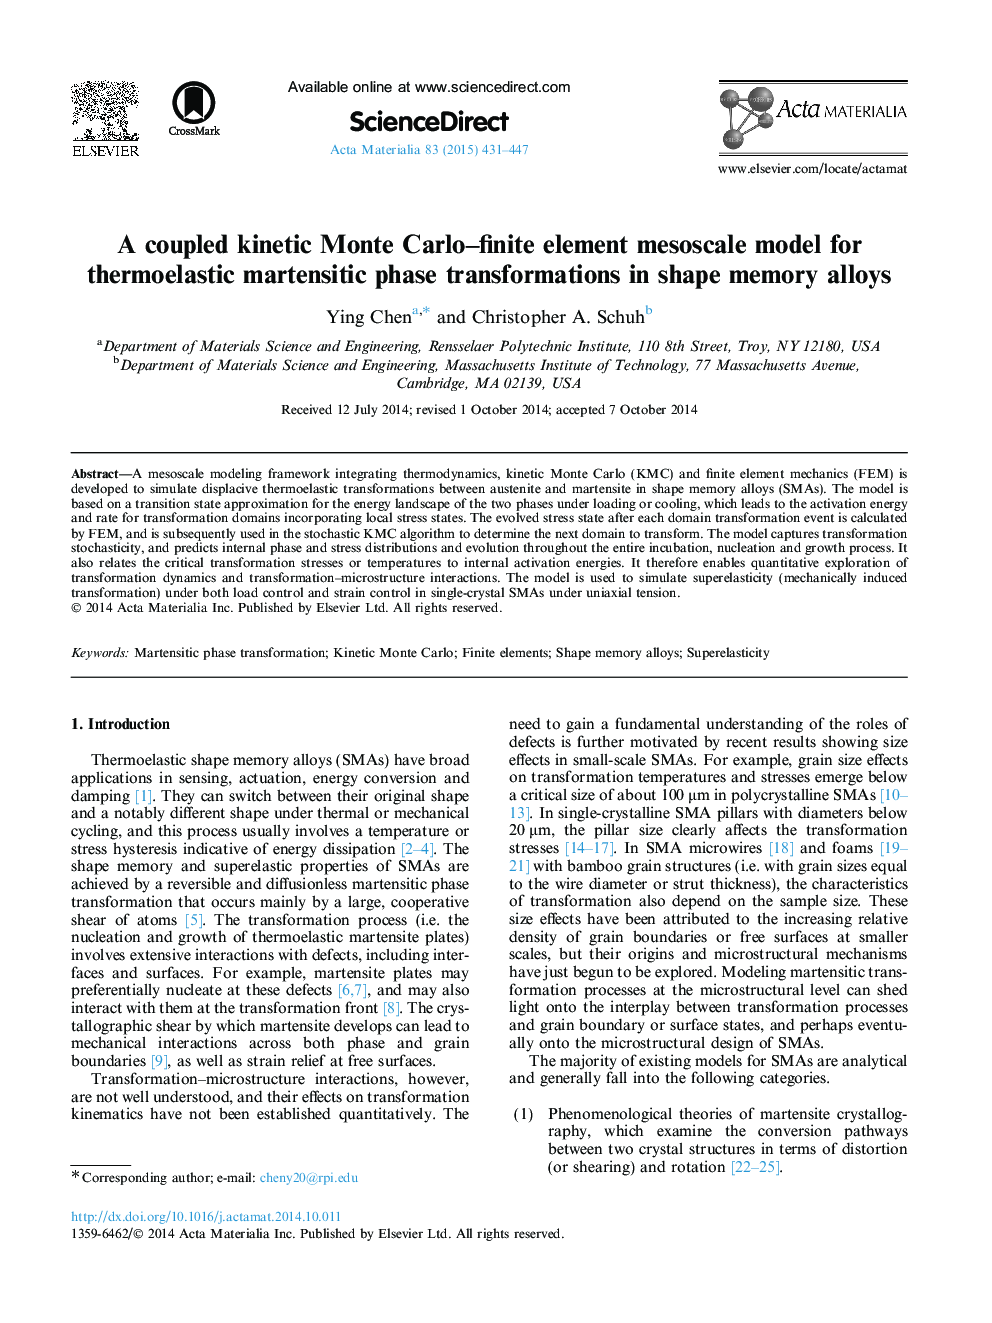 الگوریتم مزانشیمی مینر کارلو محدود برای جنبش های ترموالاستیک مارتنزیتی در آلیاژهای حافظه شکل 